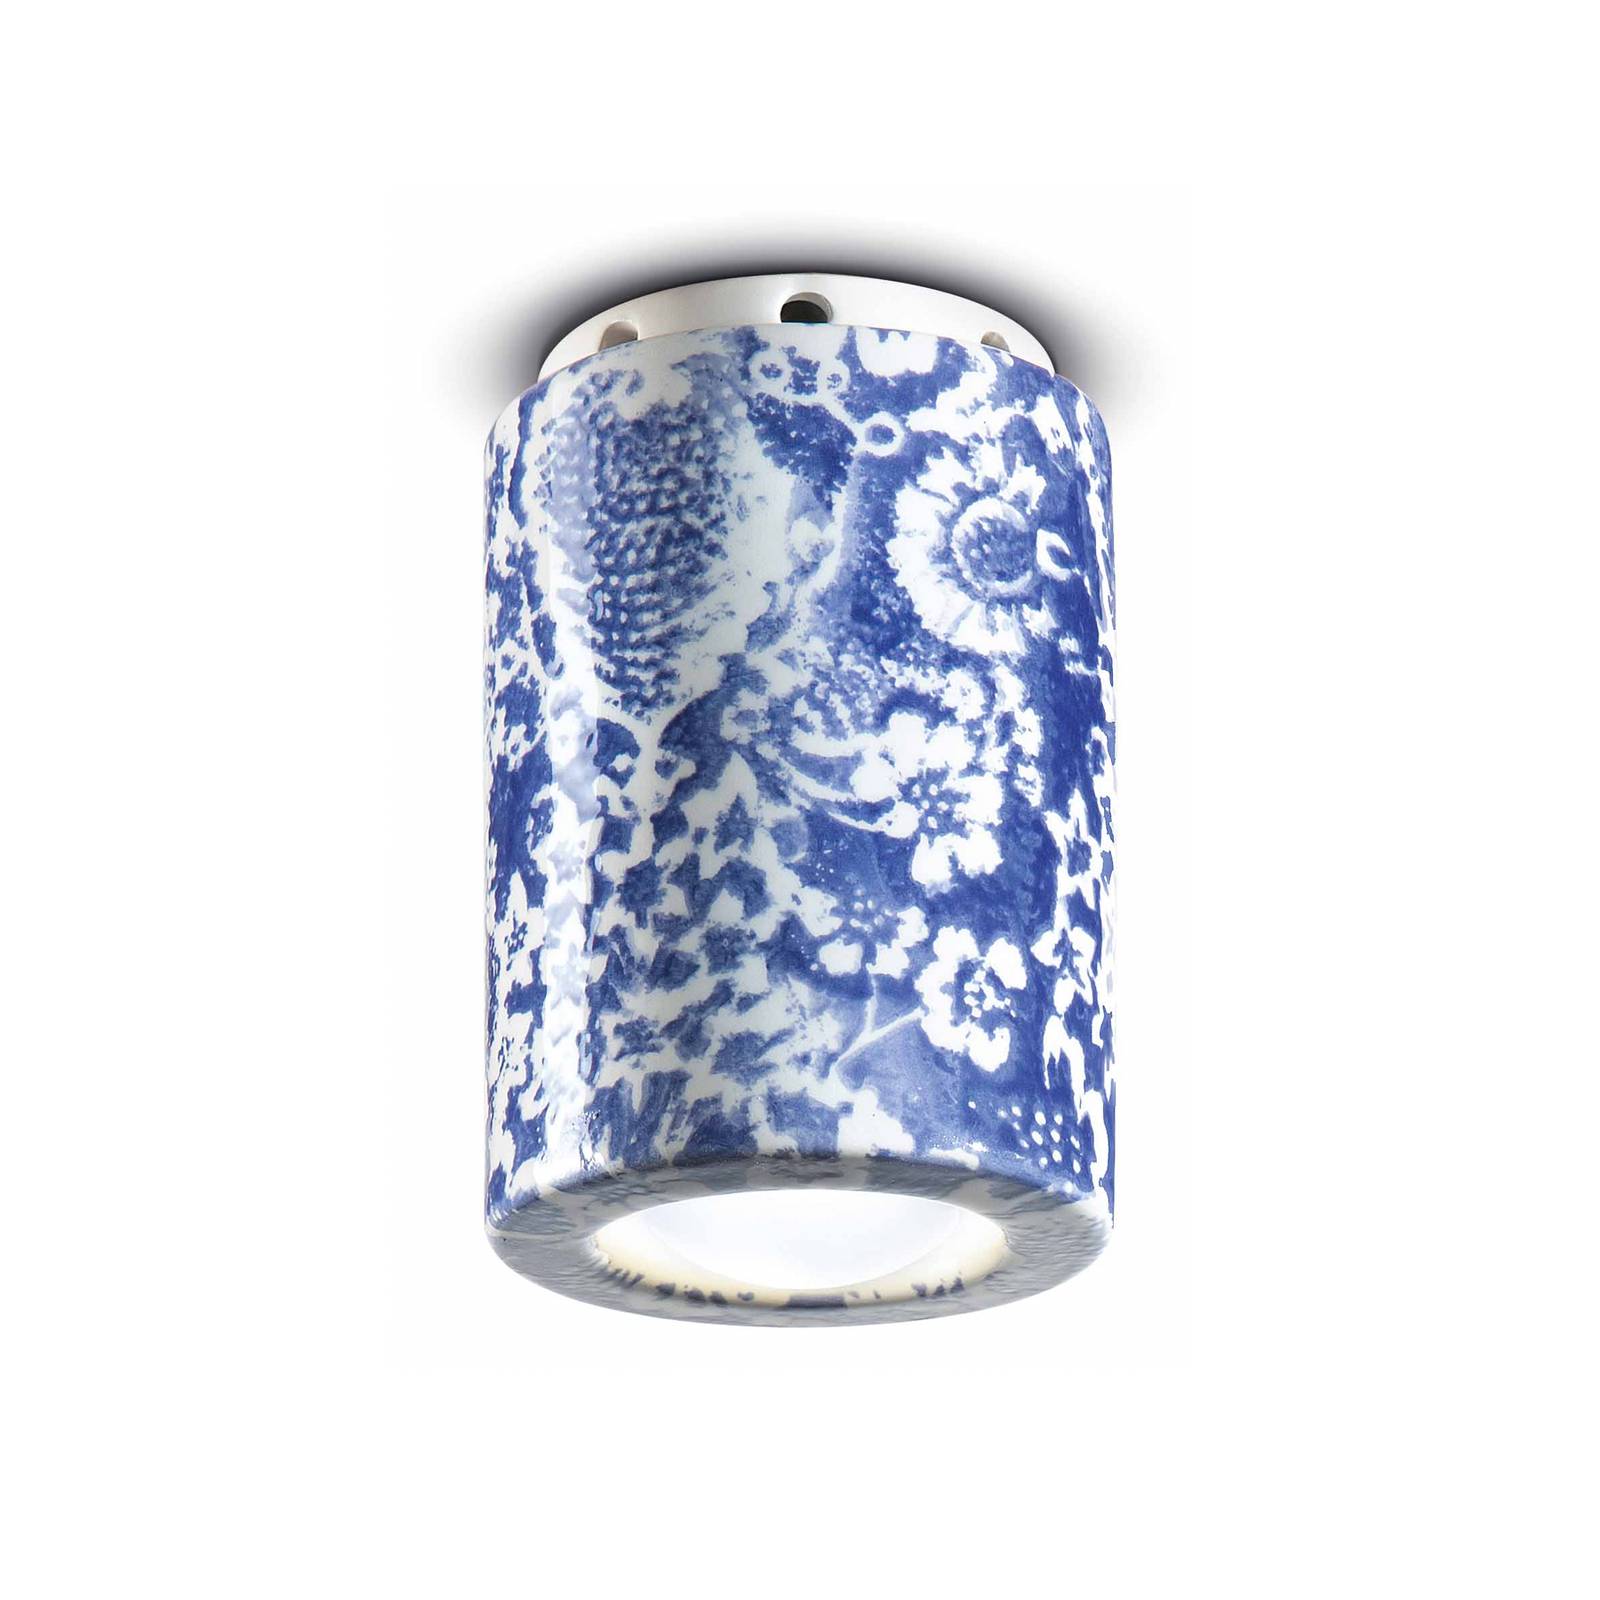 Ferroluce Deckenlampe PI, Blumenmuster, Ø 8,5 cm blau/weiß